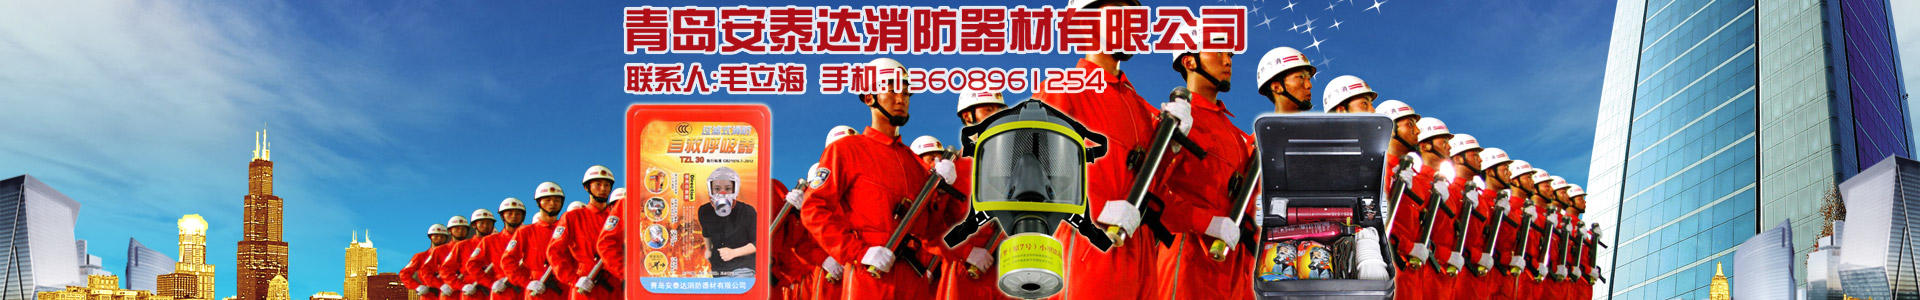 企业新闻-青岛安泰达消防器材有限公司-